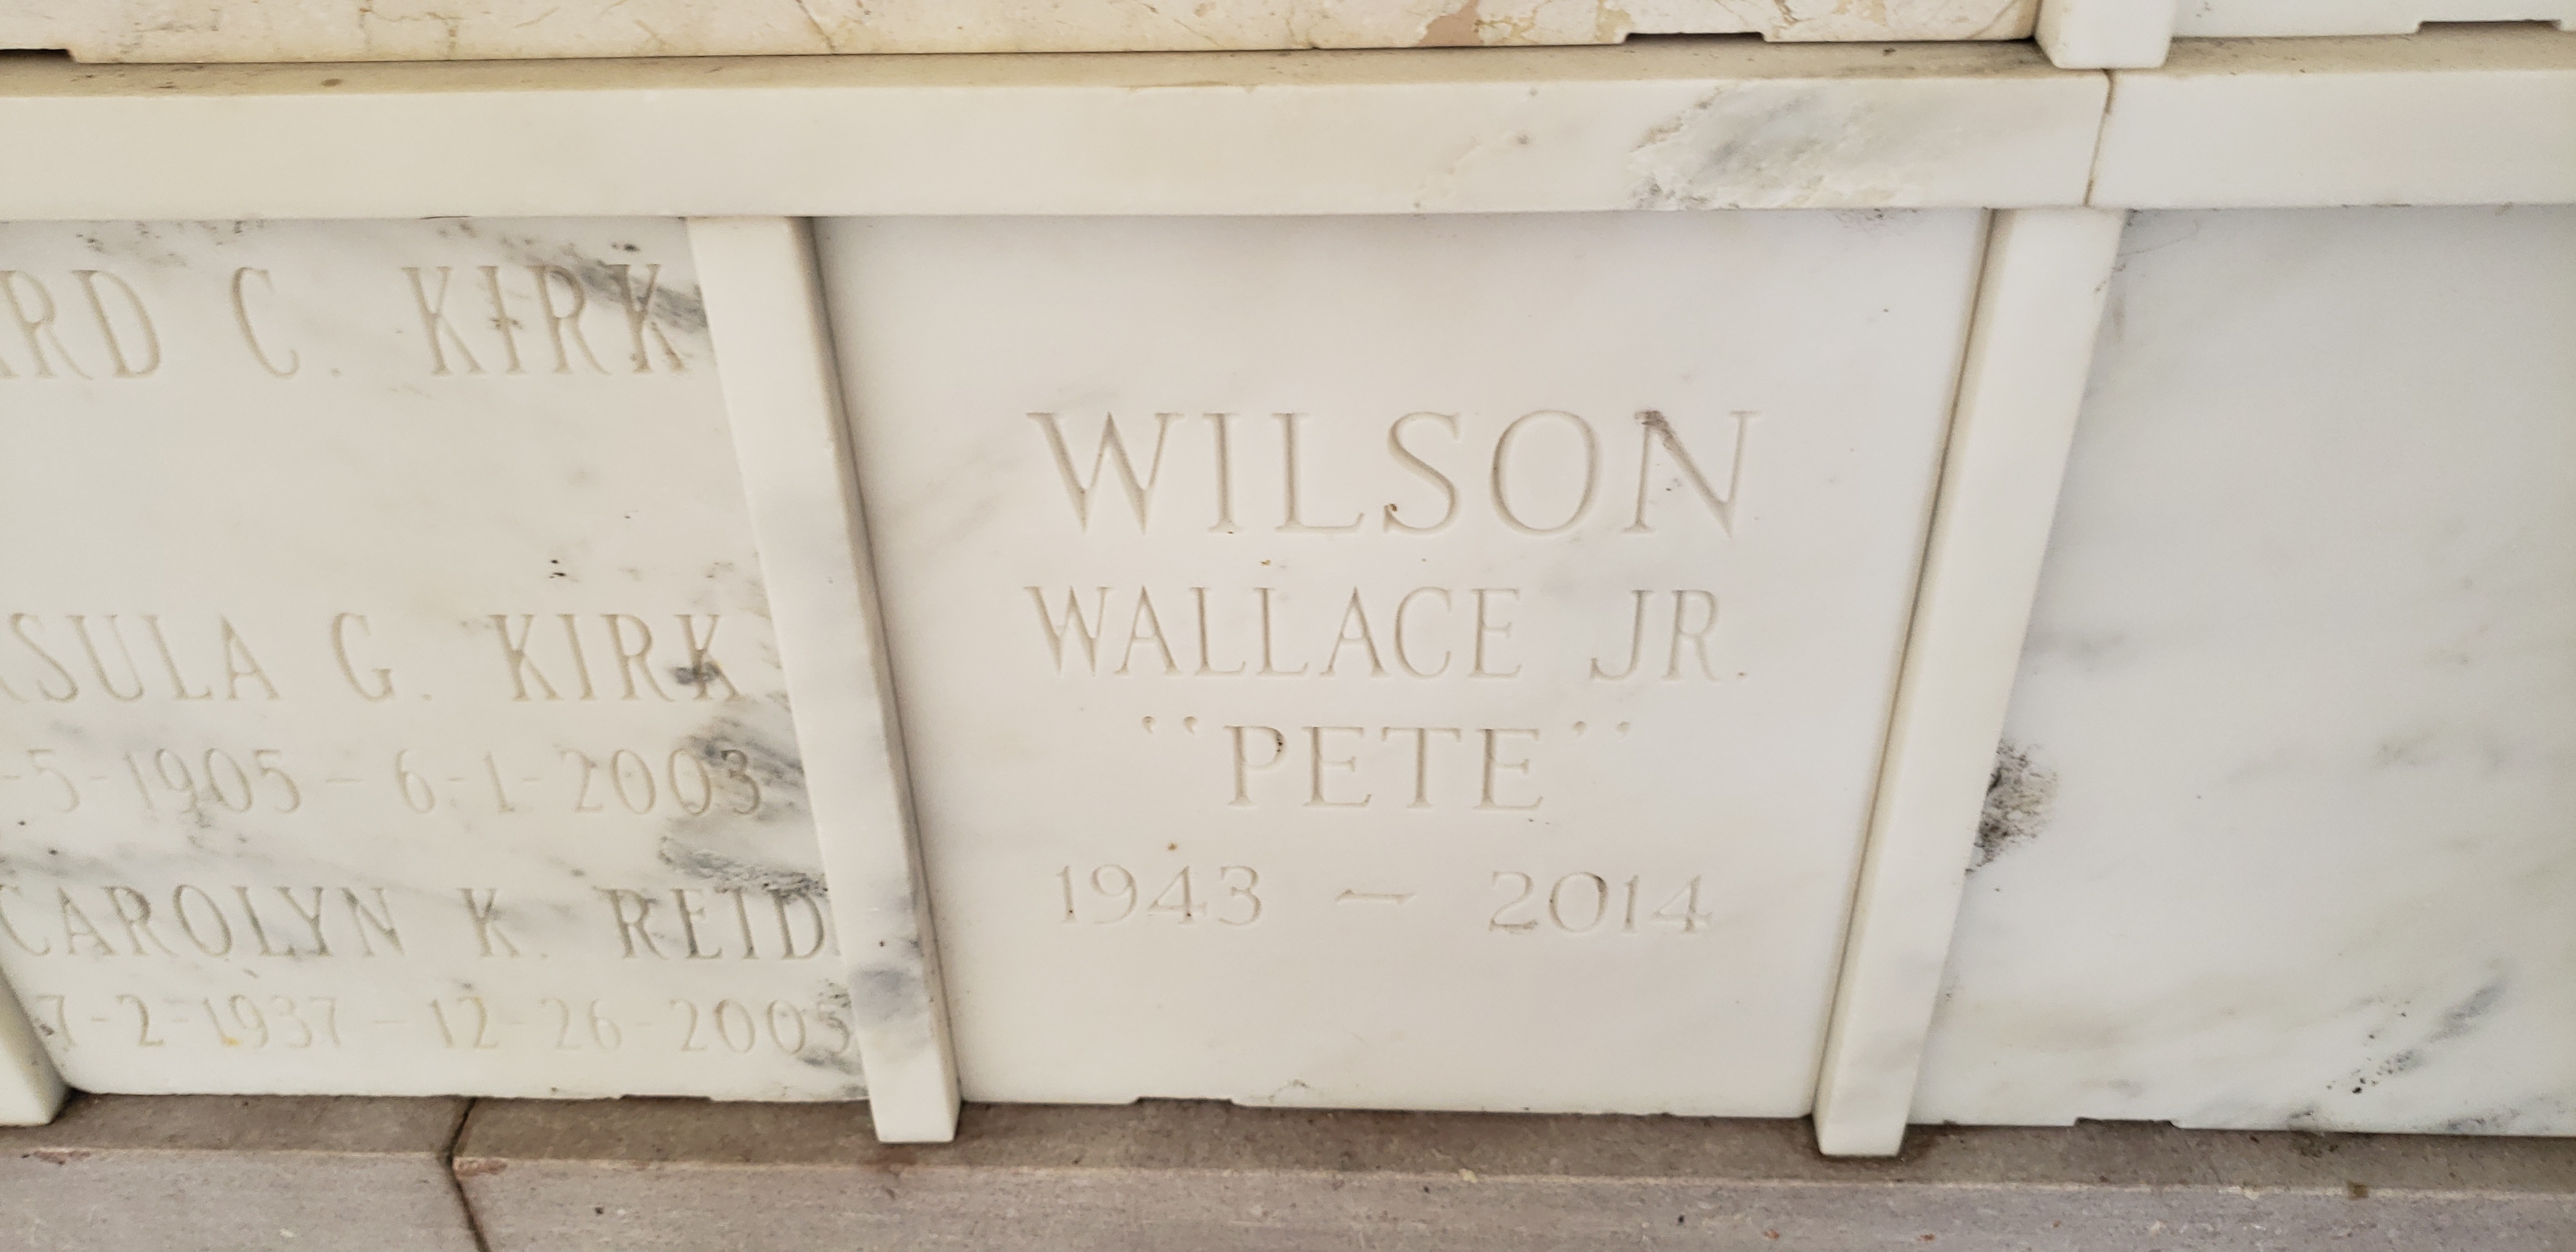 Wallace "Pete" Wilson, Jr